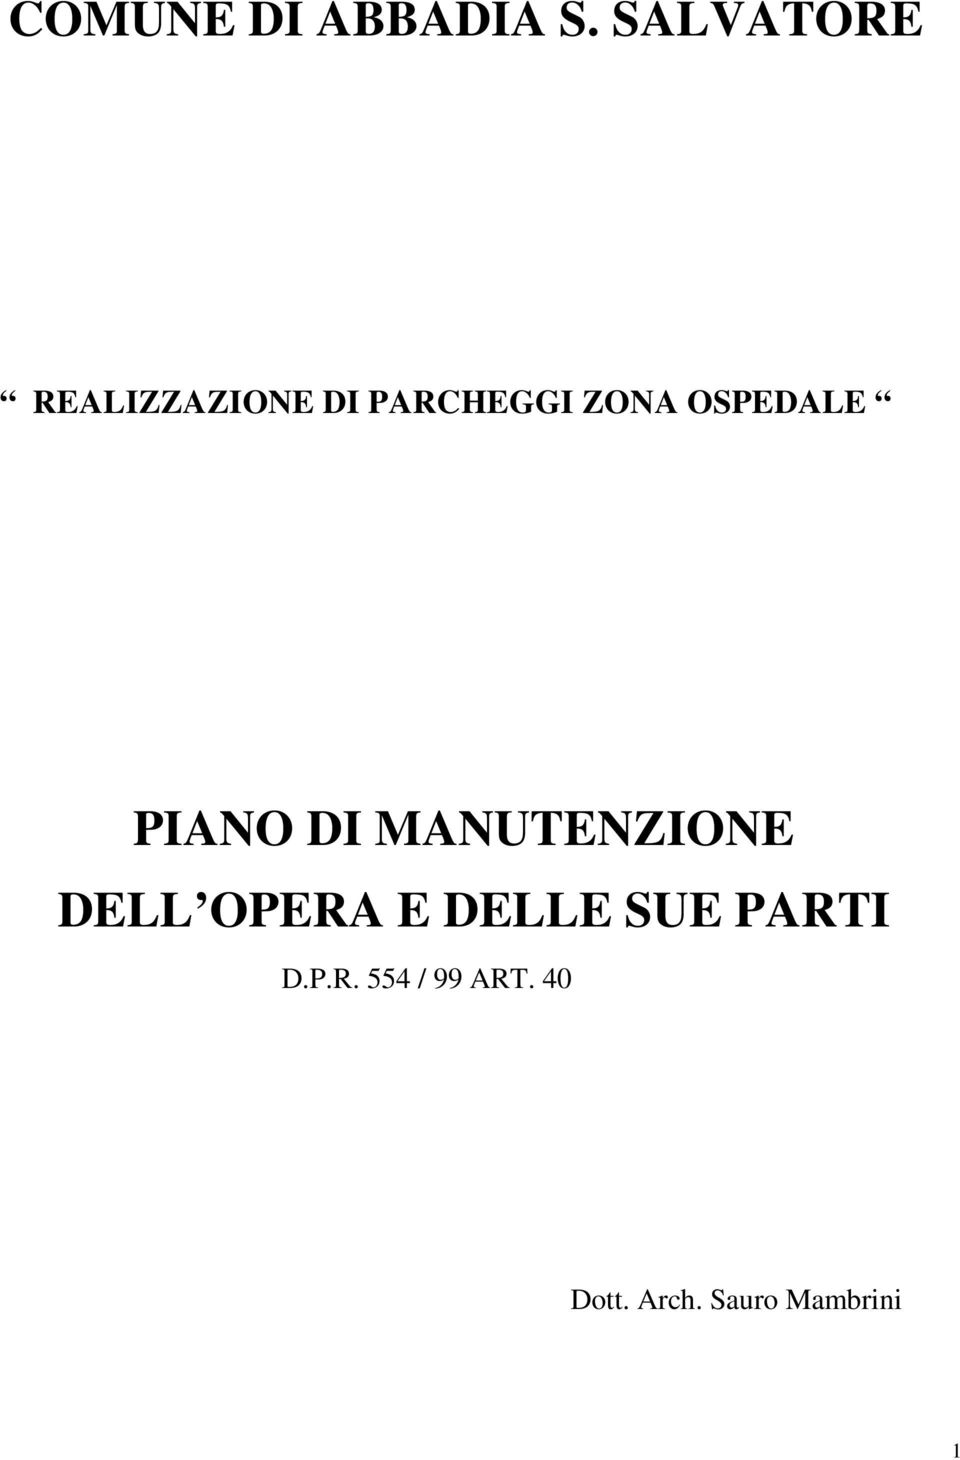 OSPEDALE PIANO DI MANUTENZIONE DELL OPERA E